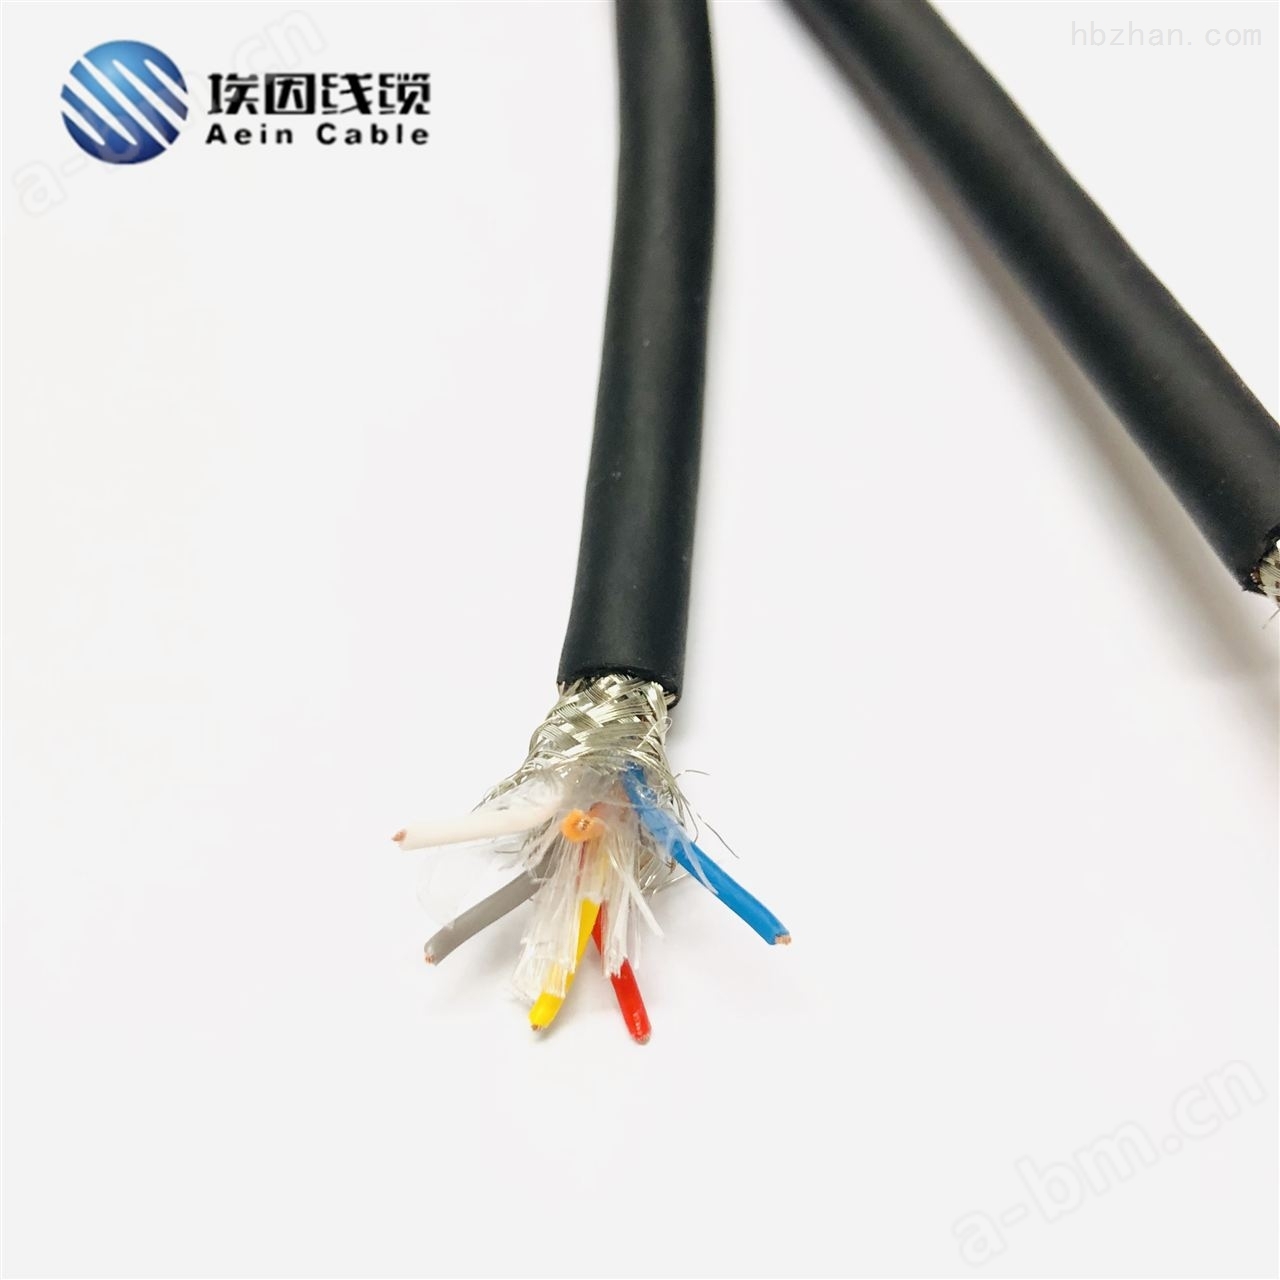 柔性橡胶电缆公司